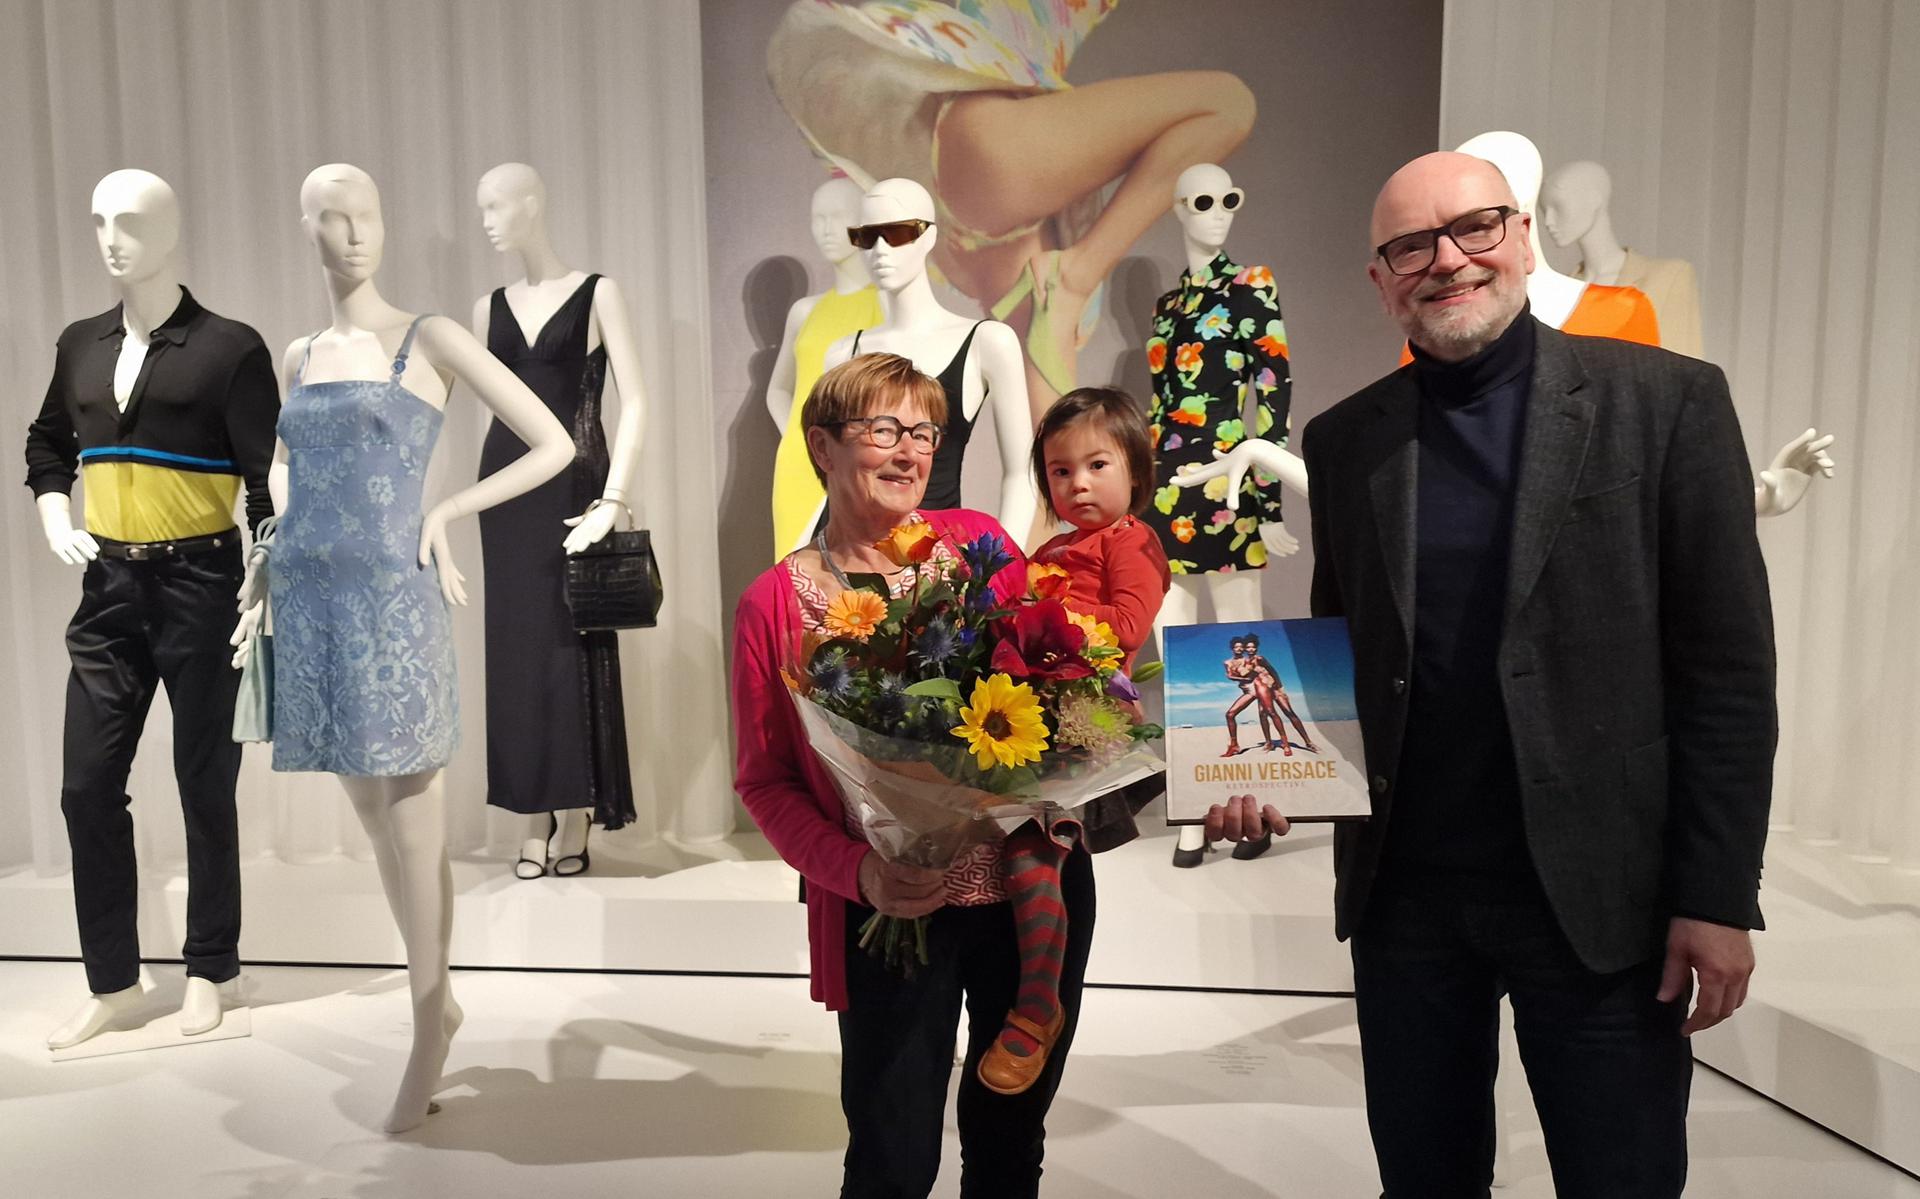 Bloemen van museumdirecteur Andreas Blühm voor Lineke Strating-Everts en haar kleindochter Sara-Yin. Lineke en Sara-Yin zijn de honderduizendste bezoeker van de tentoonstelling over Gianni Versace.